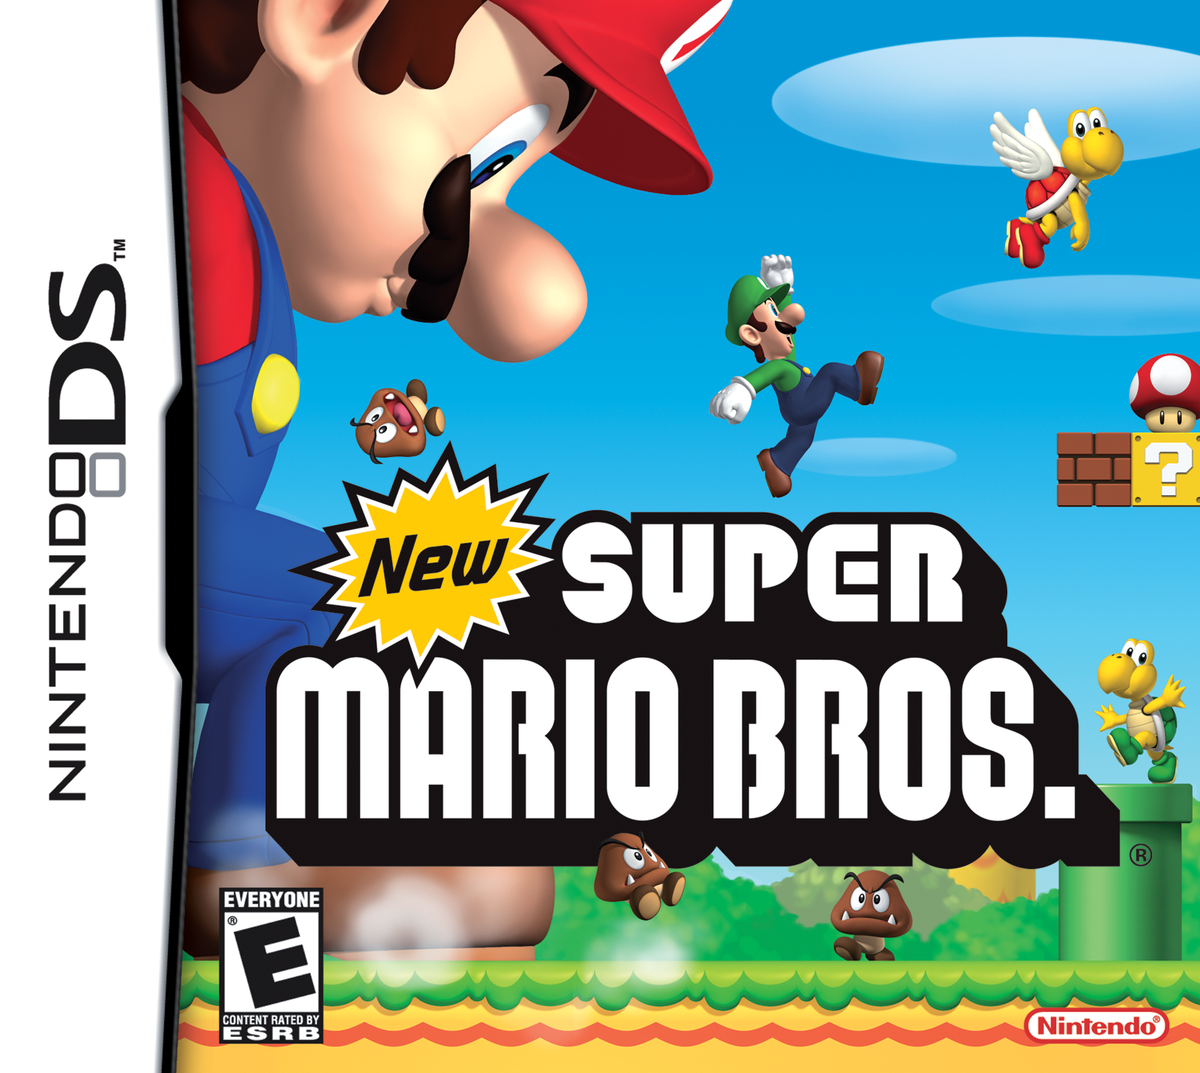 New Super Mario Bros. Announced for Nintendo 3DS: Classic 2D Platformer Makes a Comeback! 11